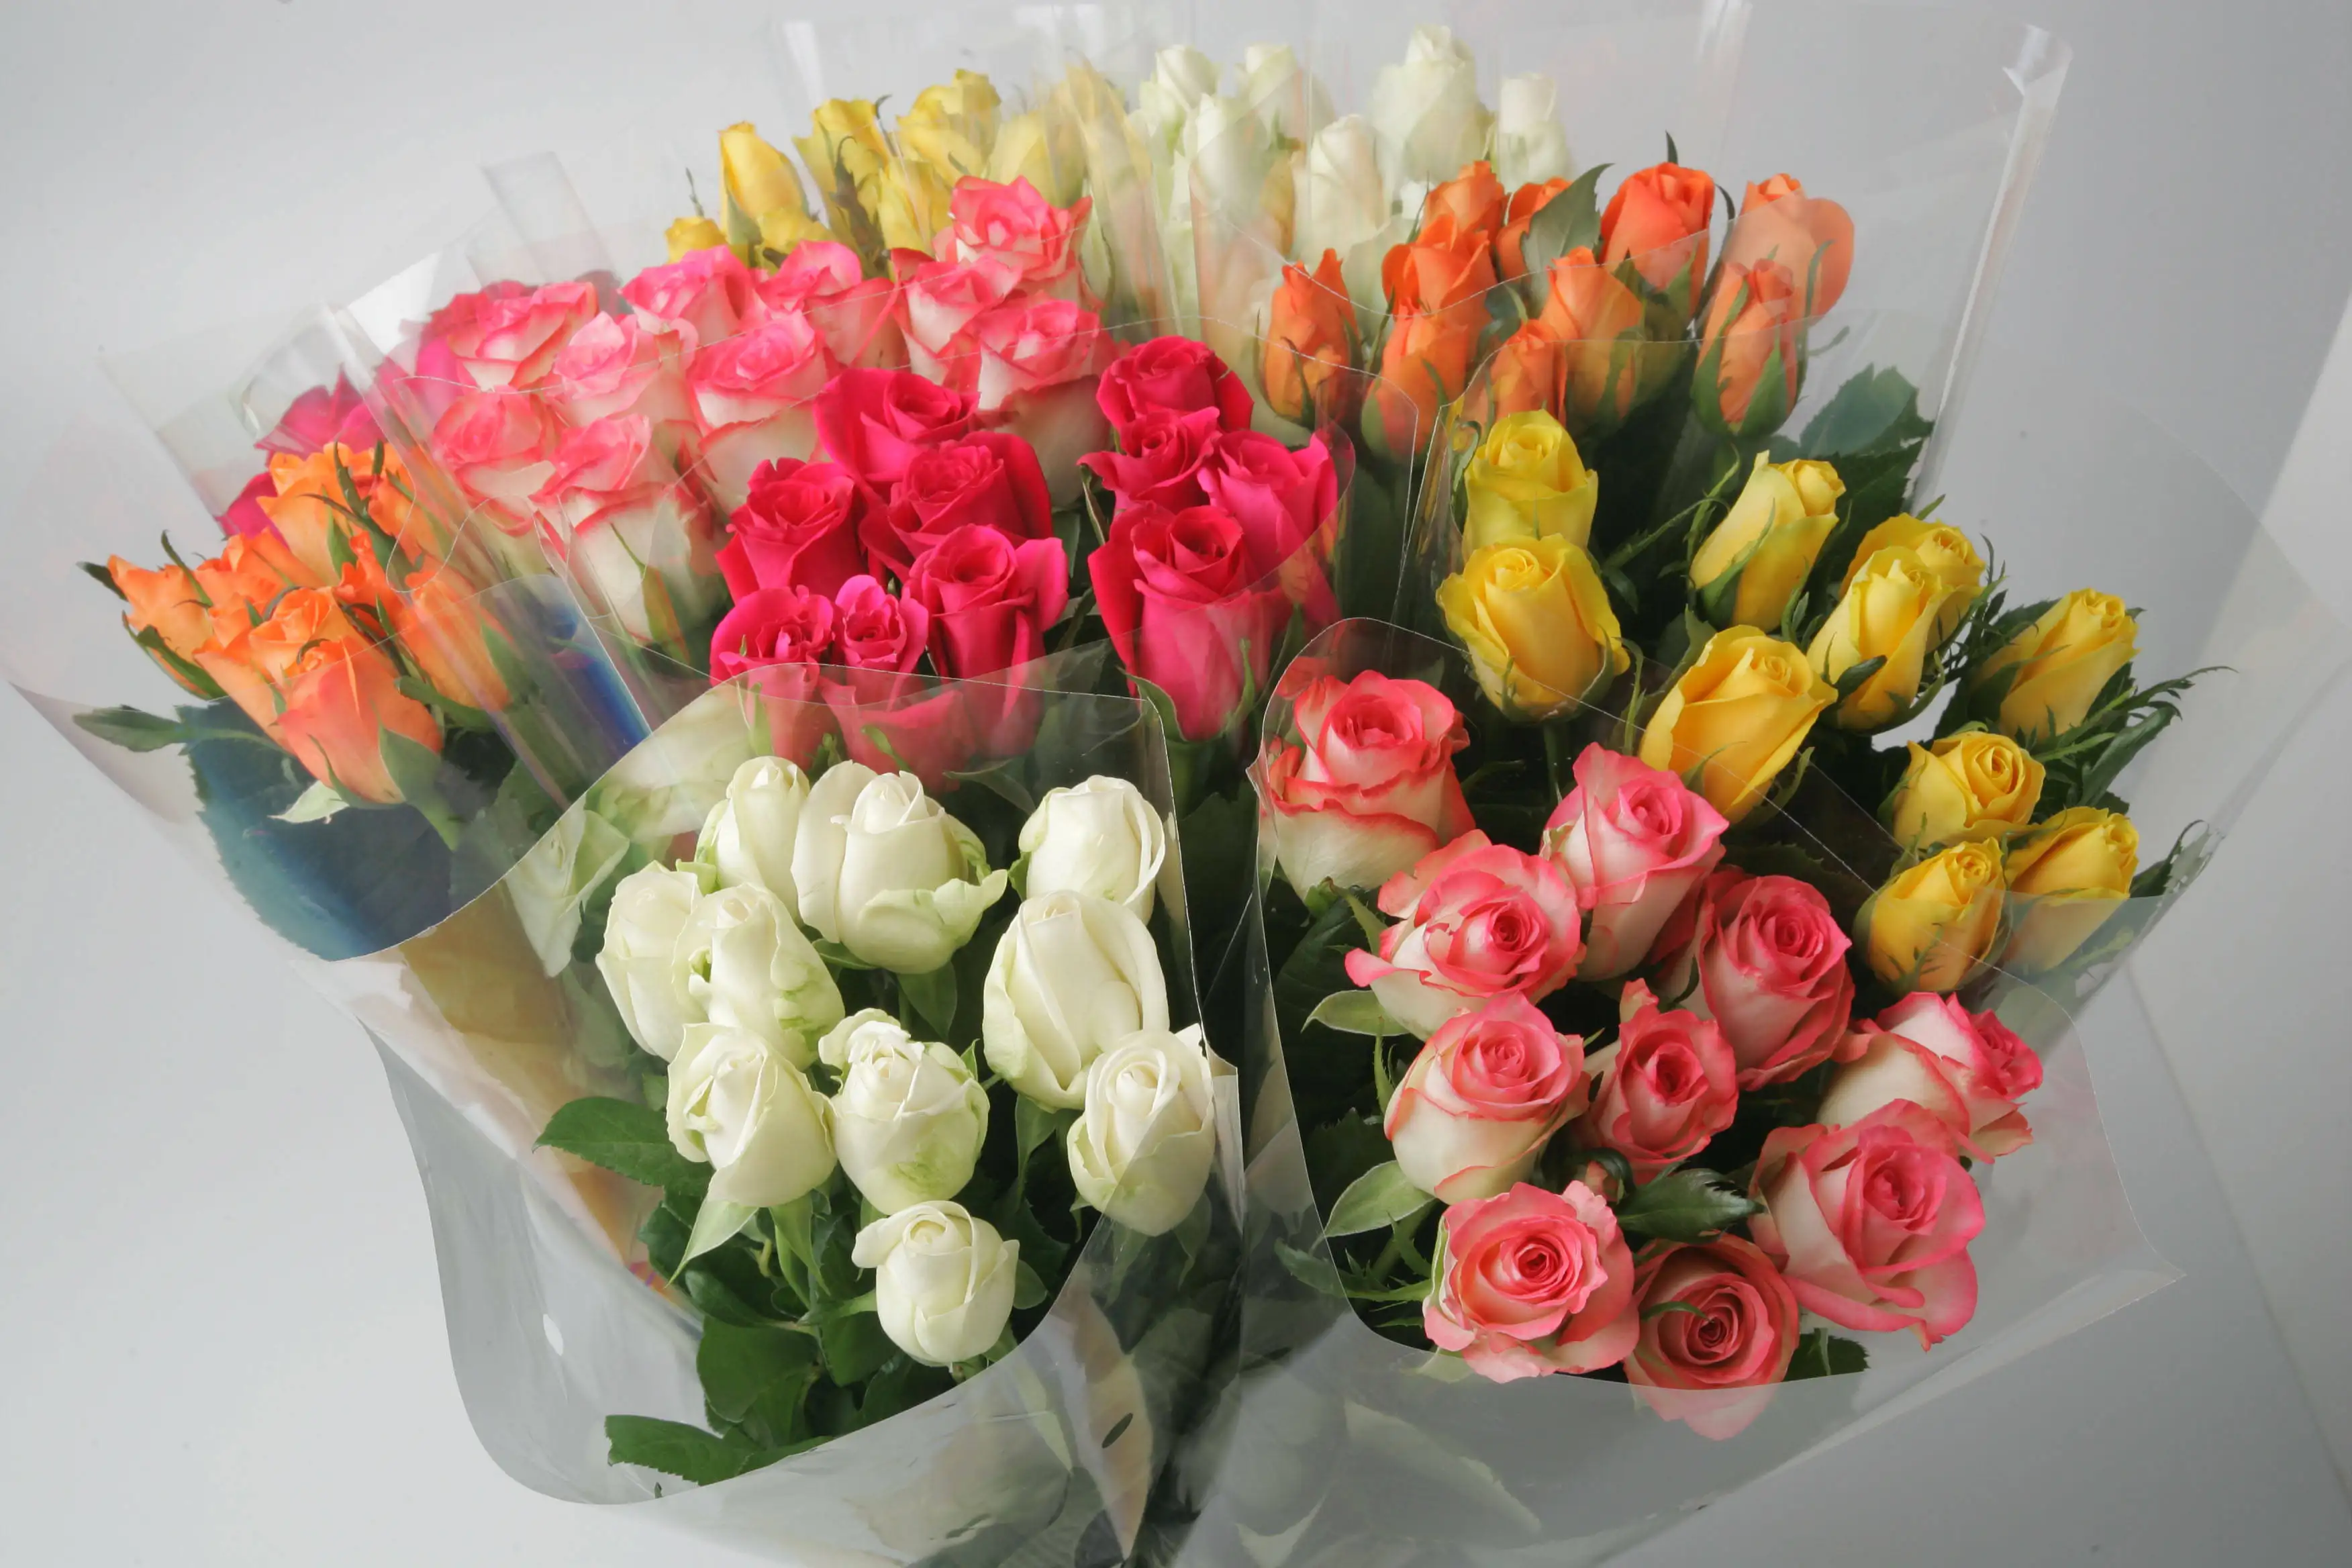 Flores de corte fresco quenianas, flores com memória intensa rosa, haste grande de 50 cm, atacado de rosas frescas